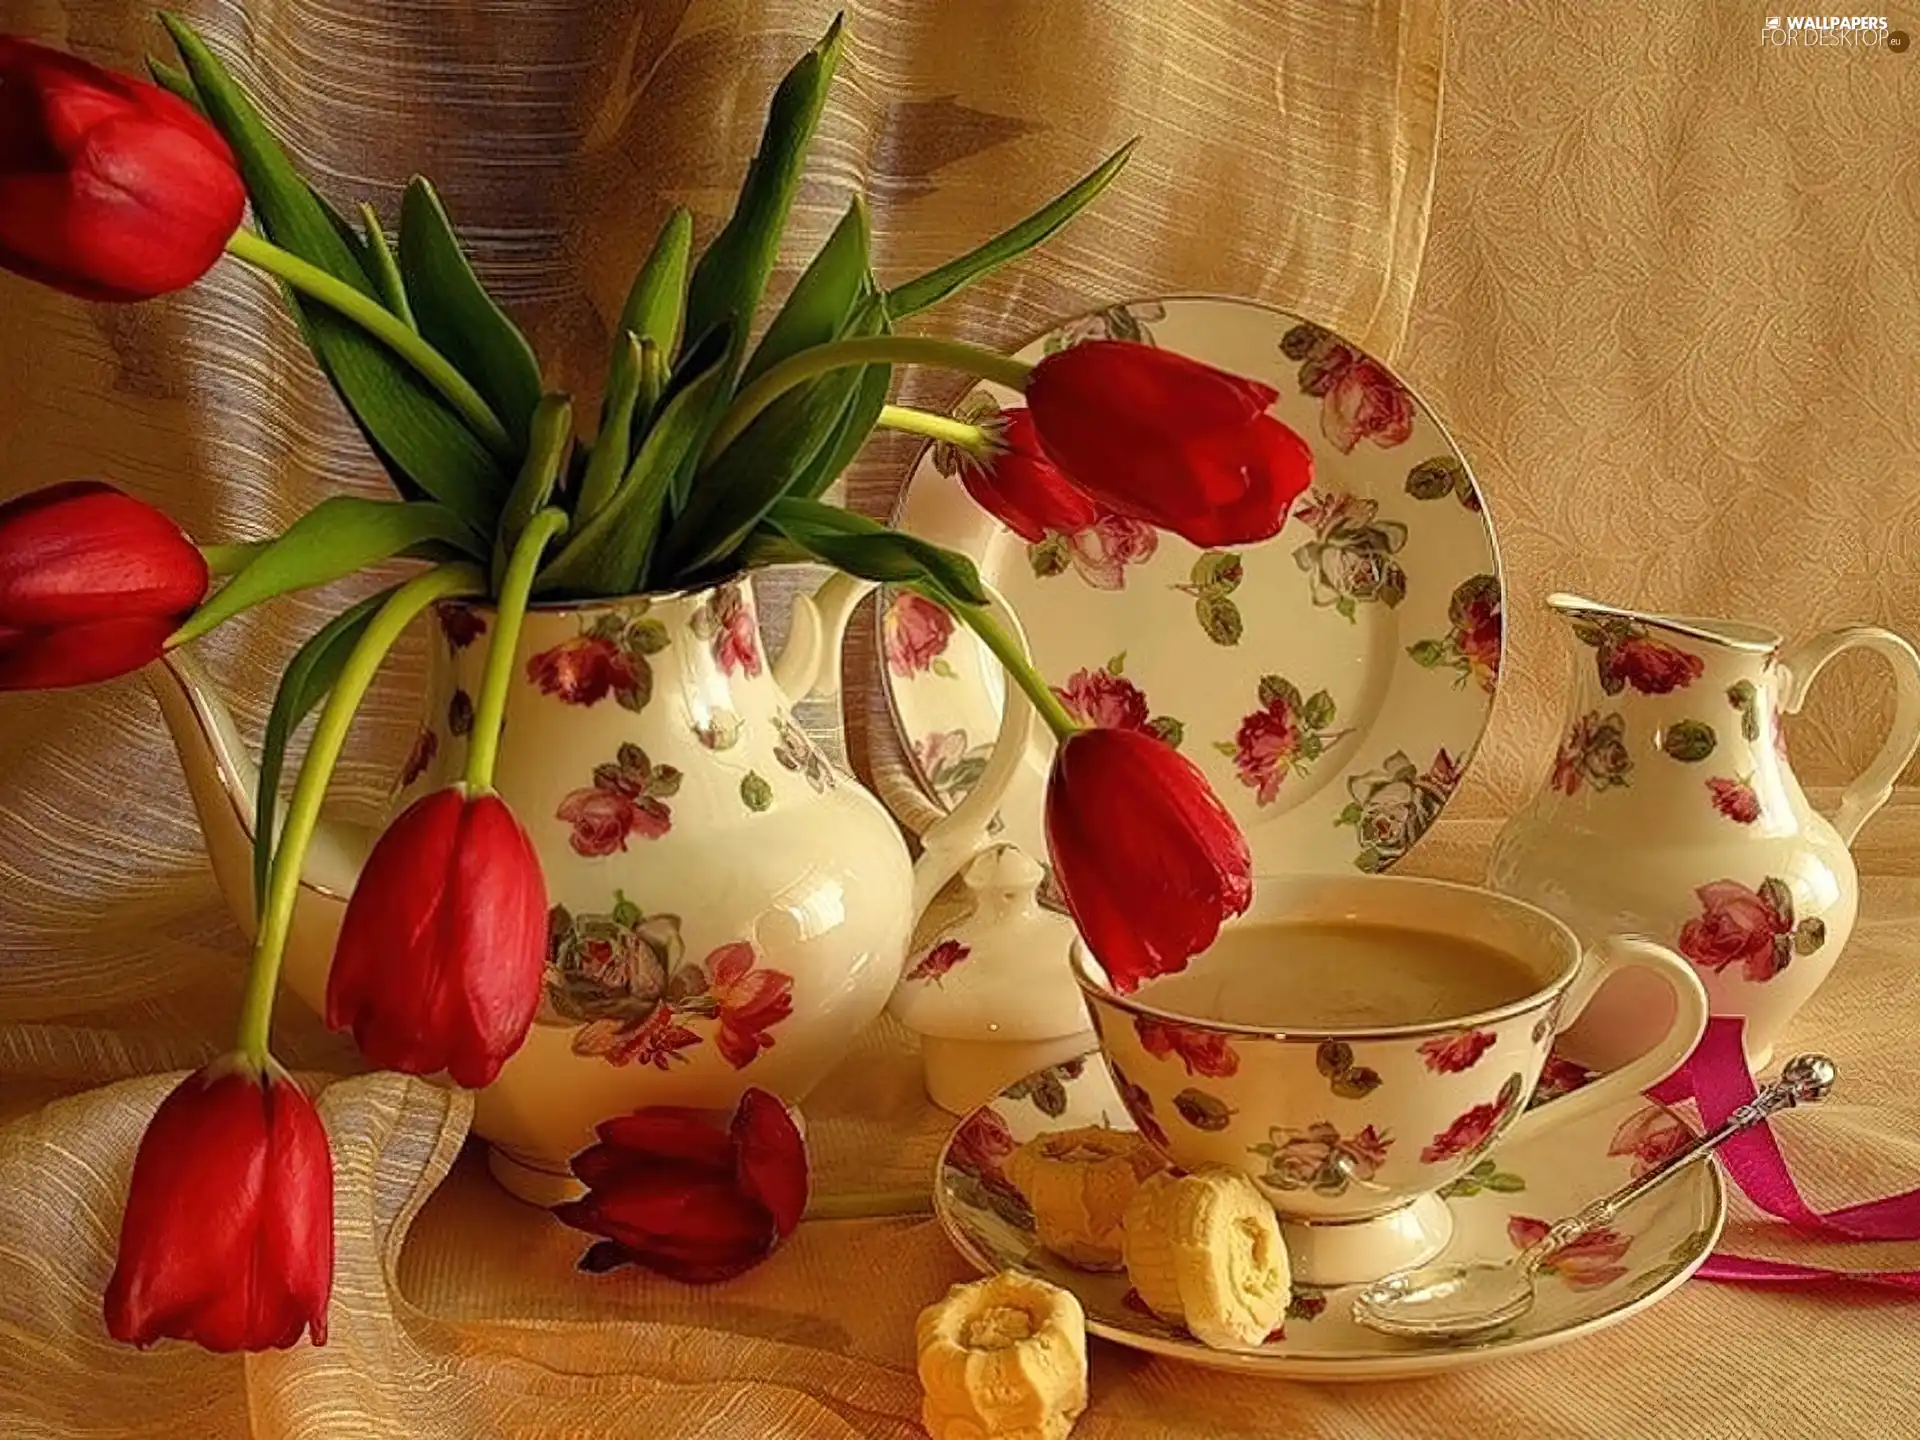 Tulips, china, coffee